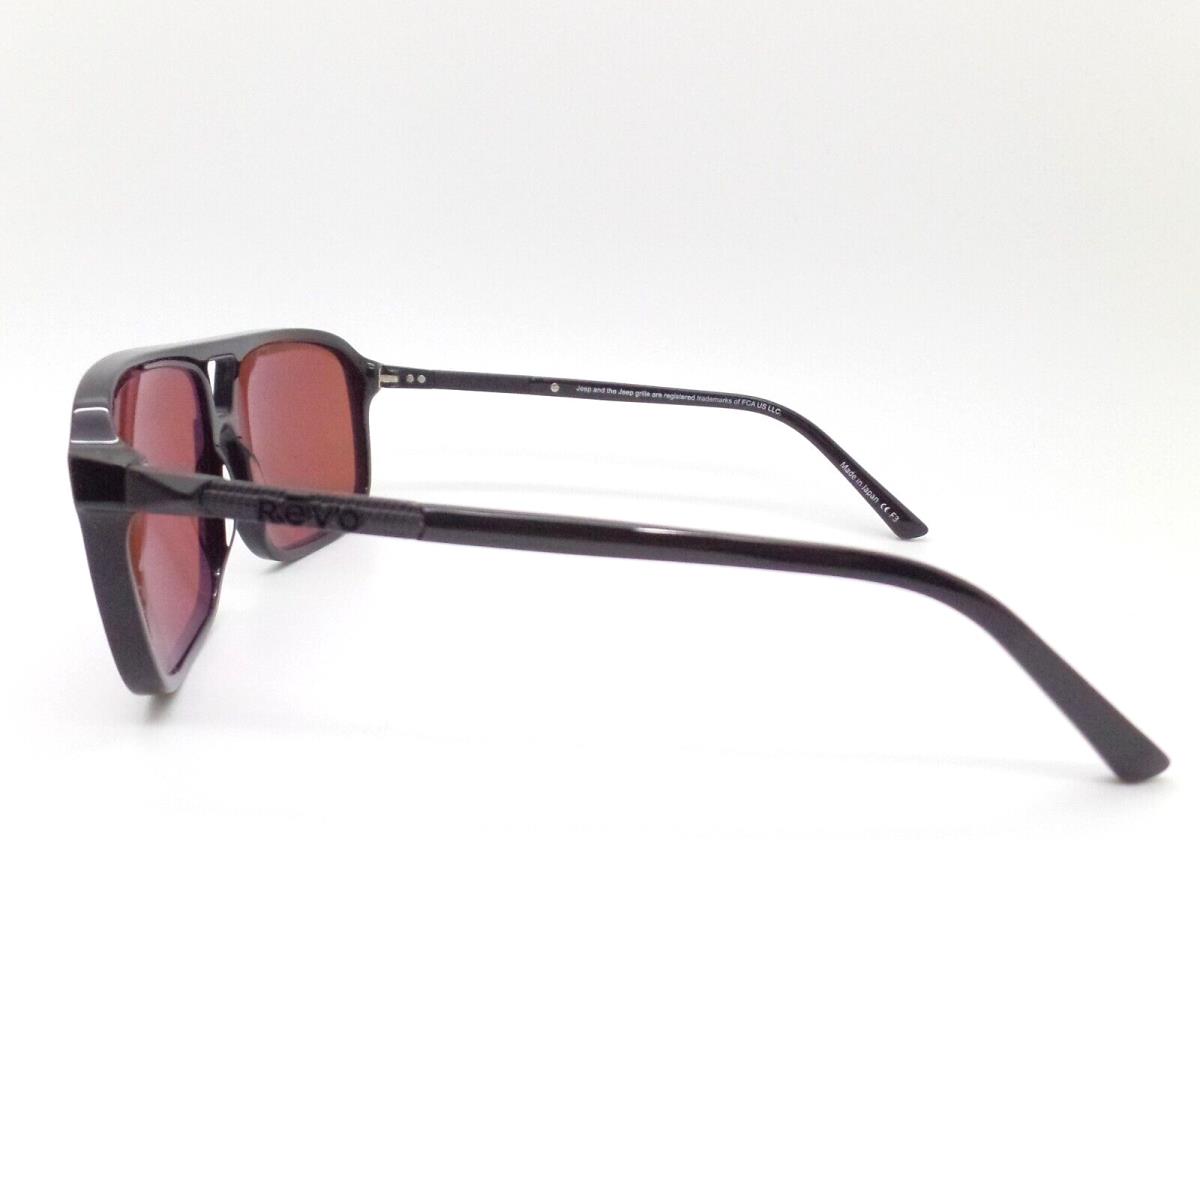 Revo sunglasses Desert - Frame: Gloss Black, Lens: 2